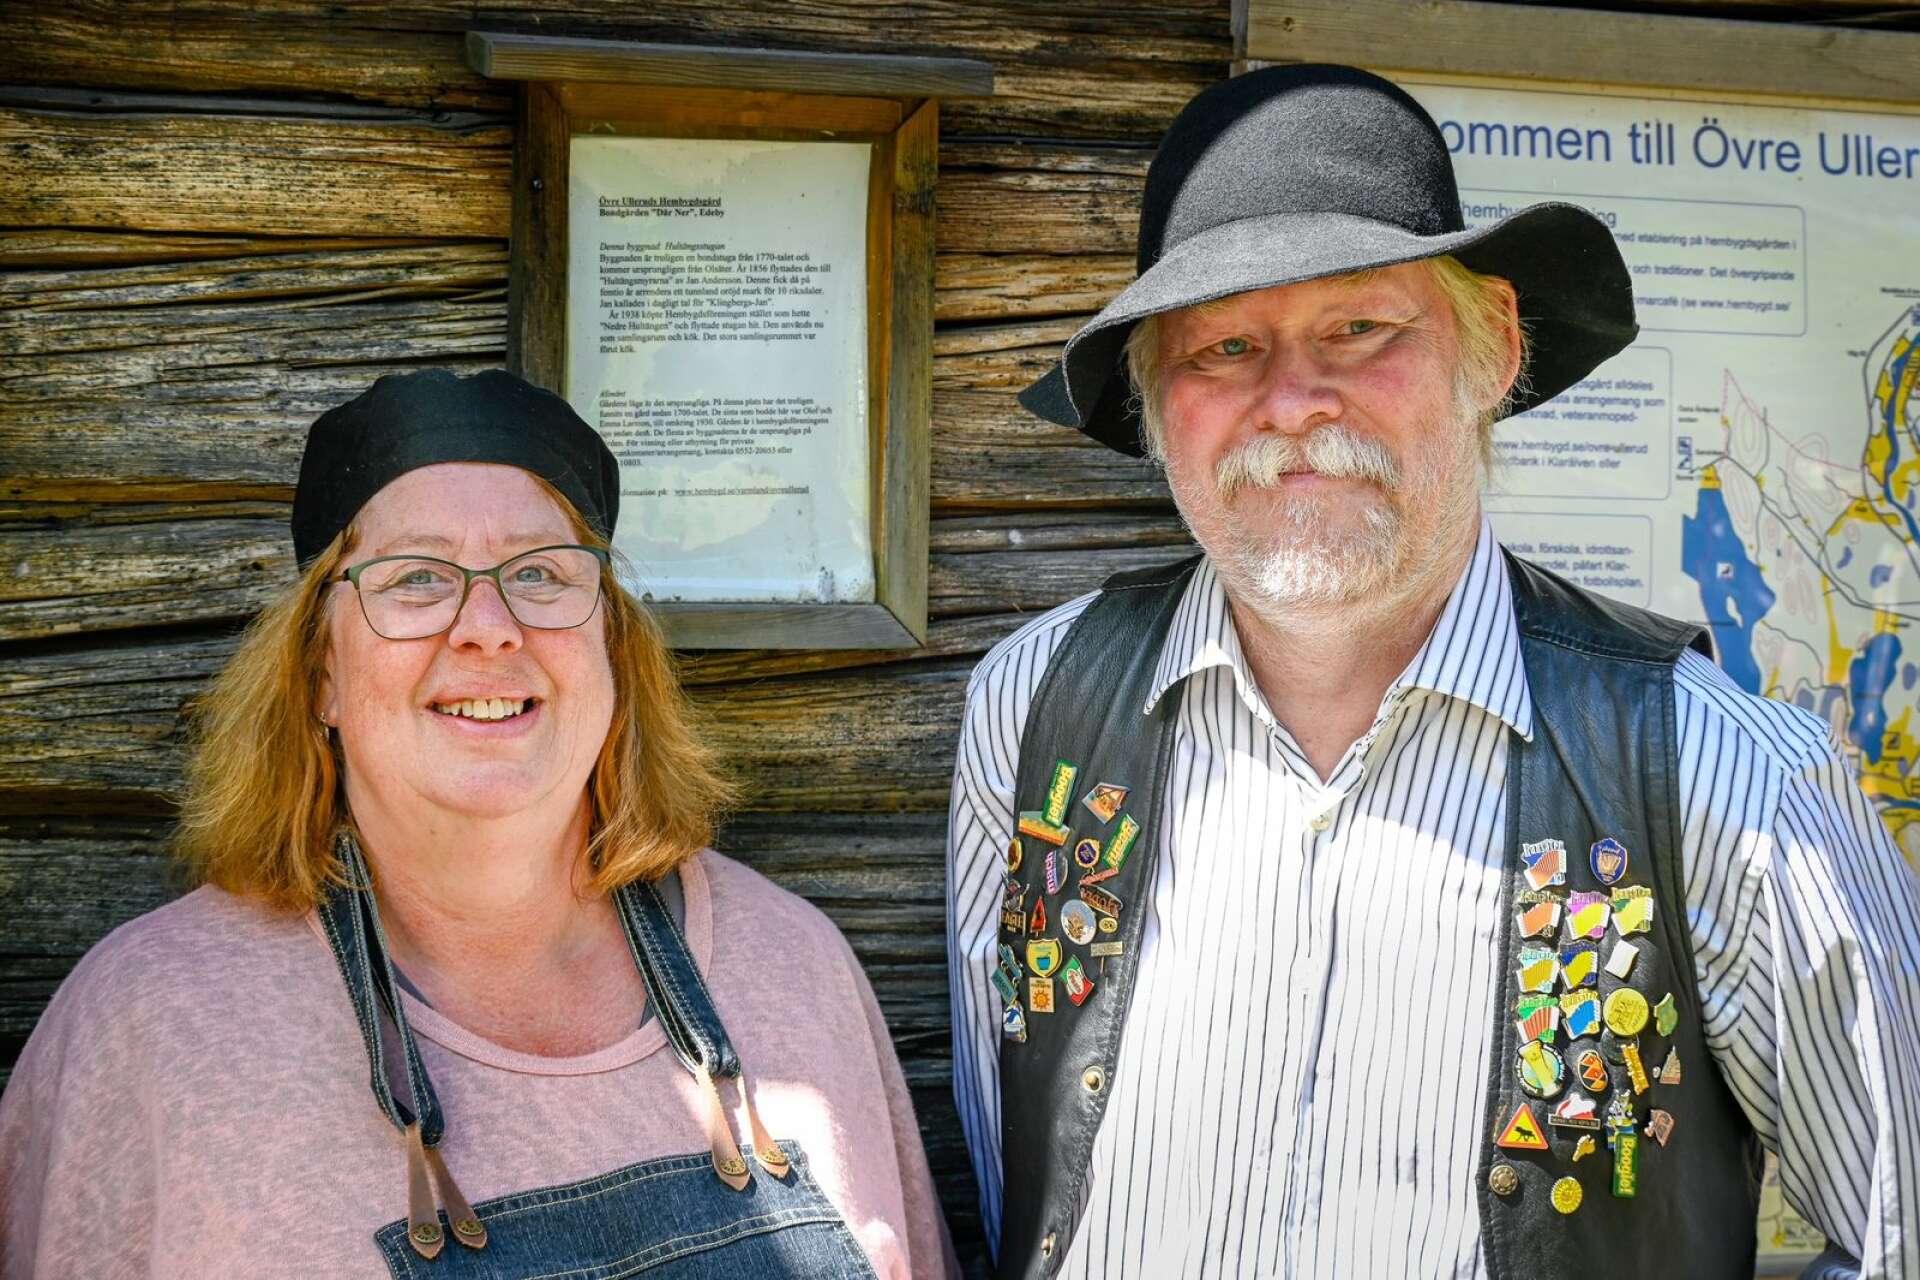 Övre Ulleruds Hembygdsförening som arrangerat marknaden, är mer än nöjda över årets upplaga som slagit flera rekord. Från vänster ordförande Elisabeth Byström och kassören Peter Lingman.